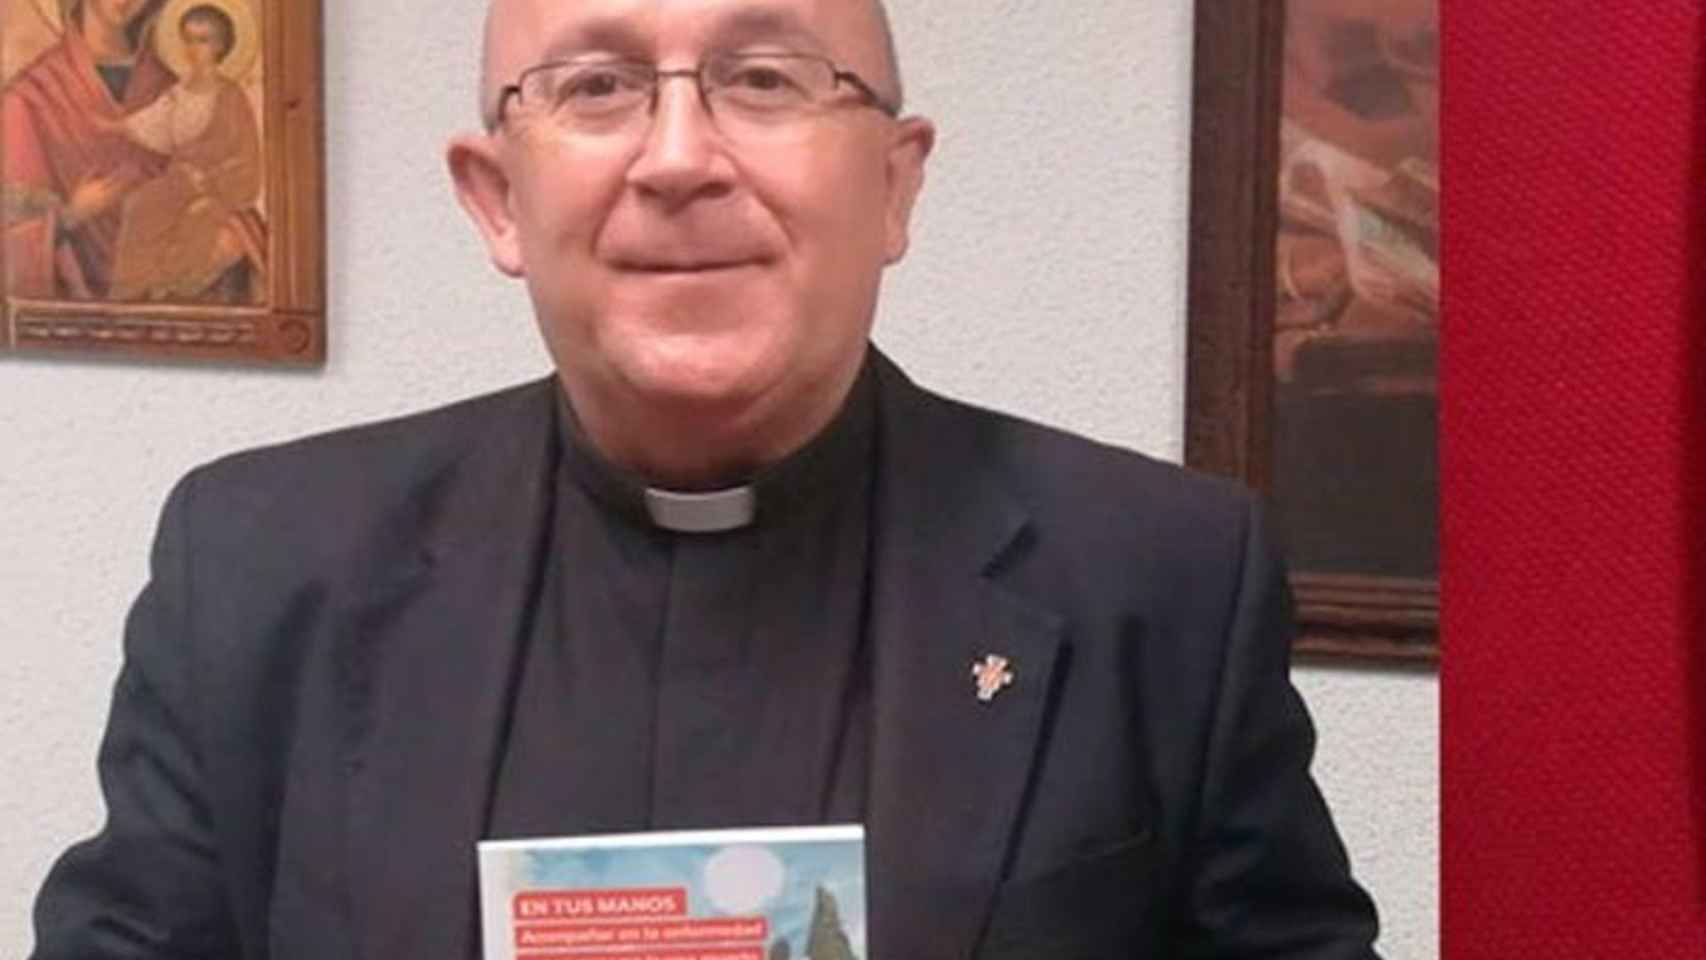 Nombran al sacerdote toledano José María Avendaño, obispo auxiliar de Getafe